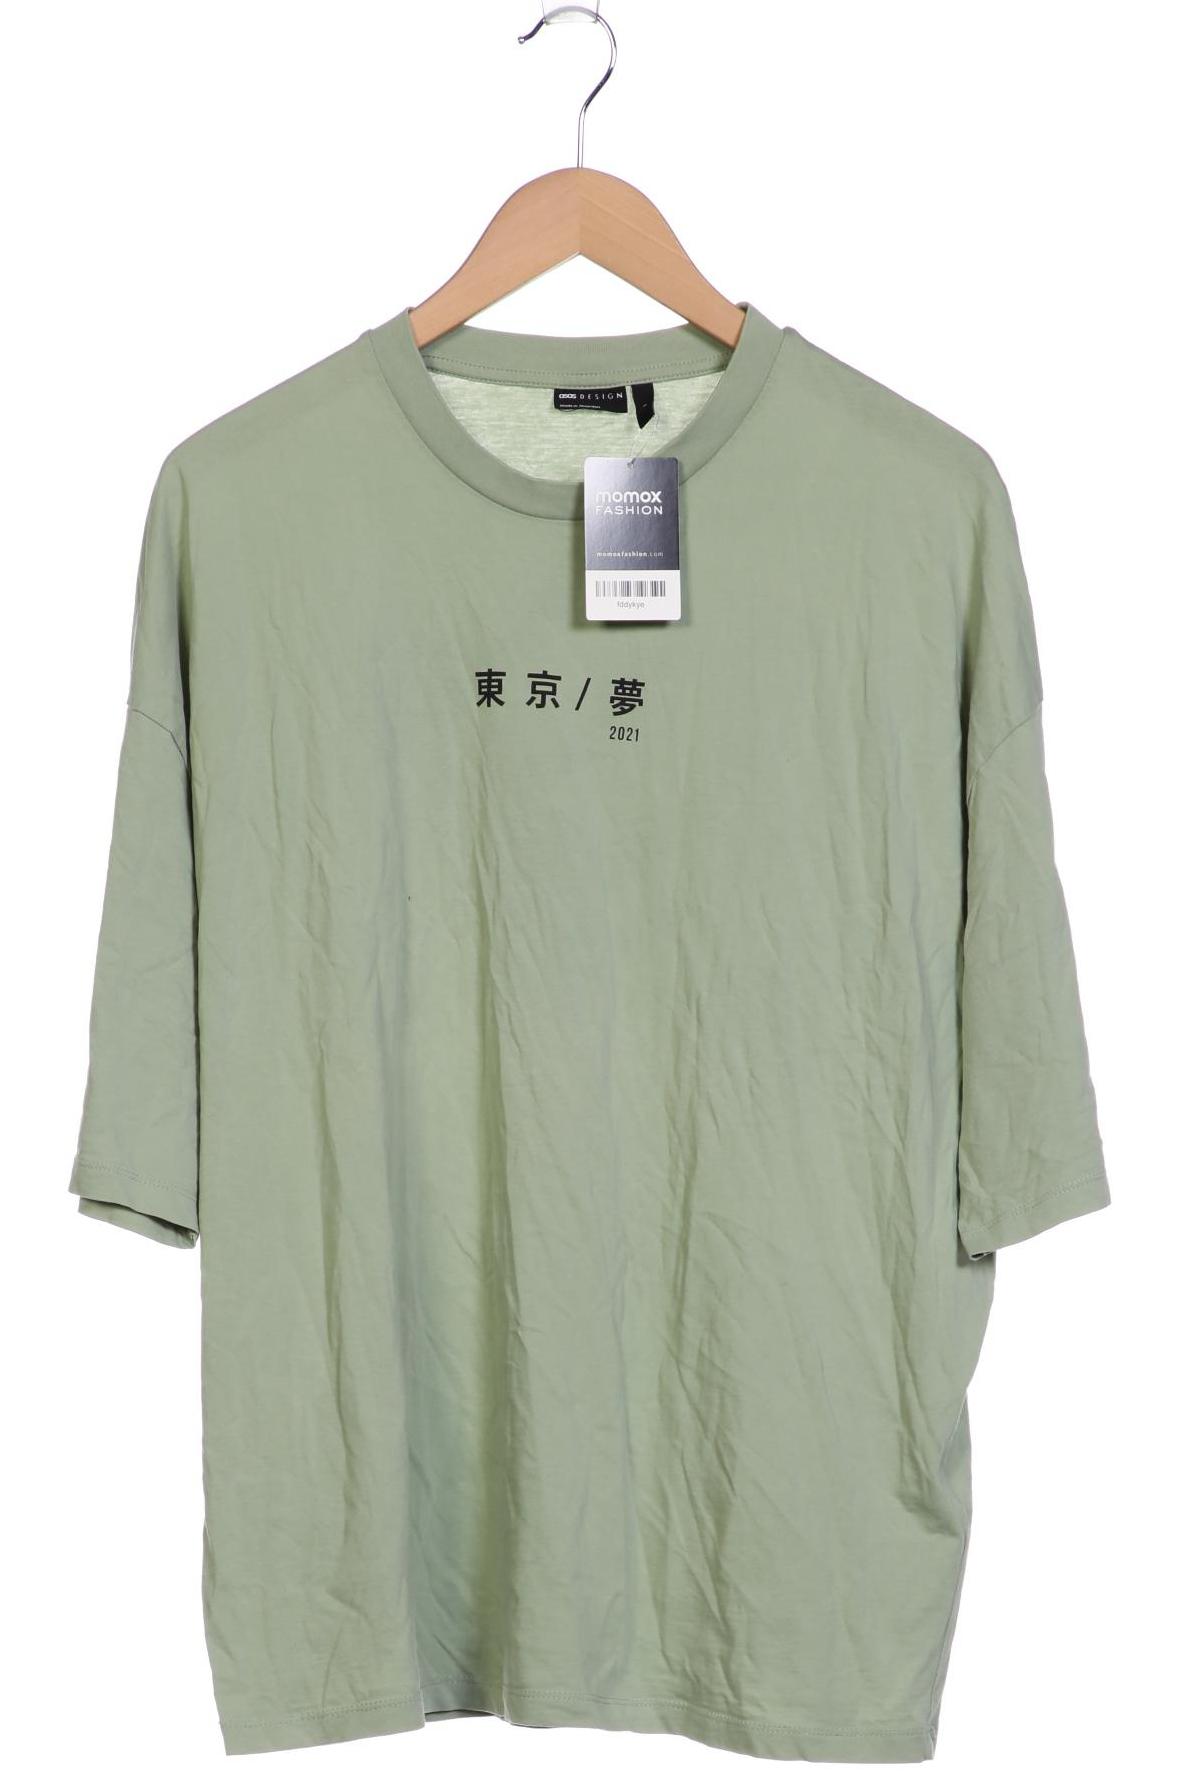 asos Herren T-Shirt, grün, Gr. 52 von asos